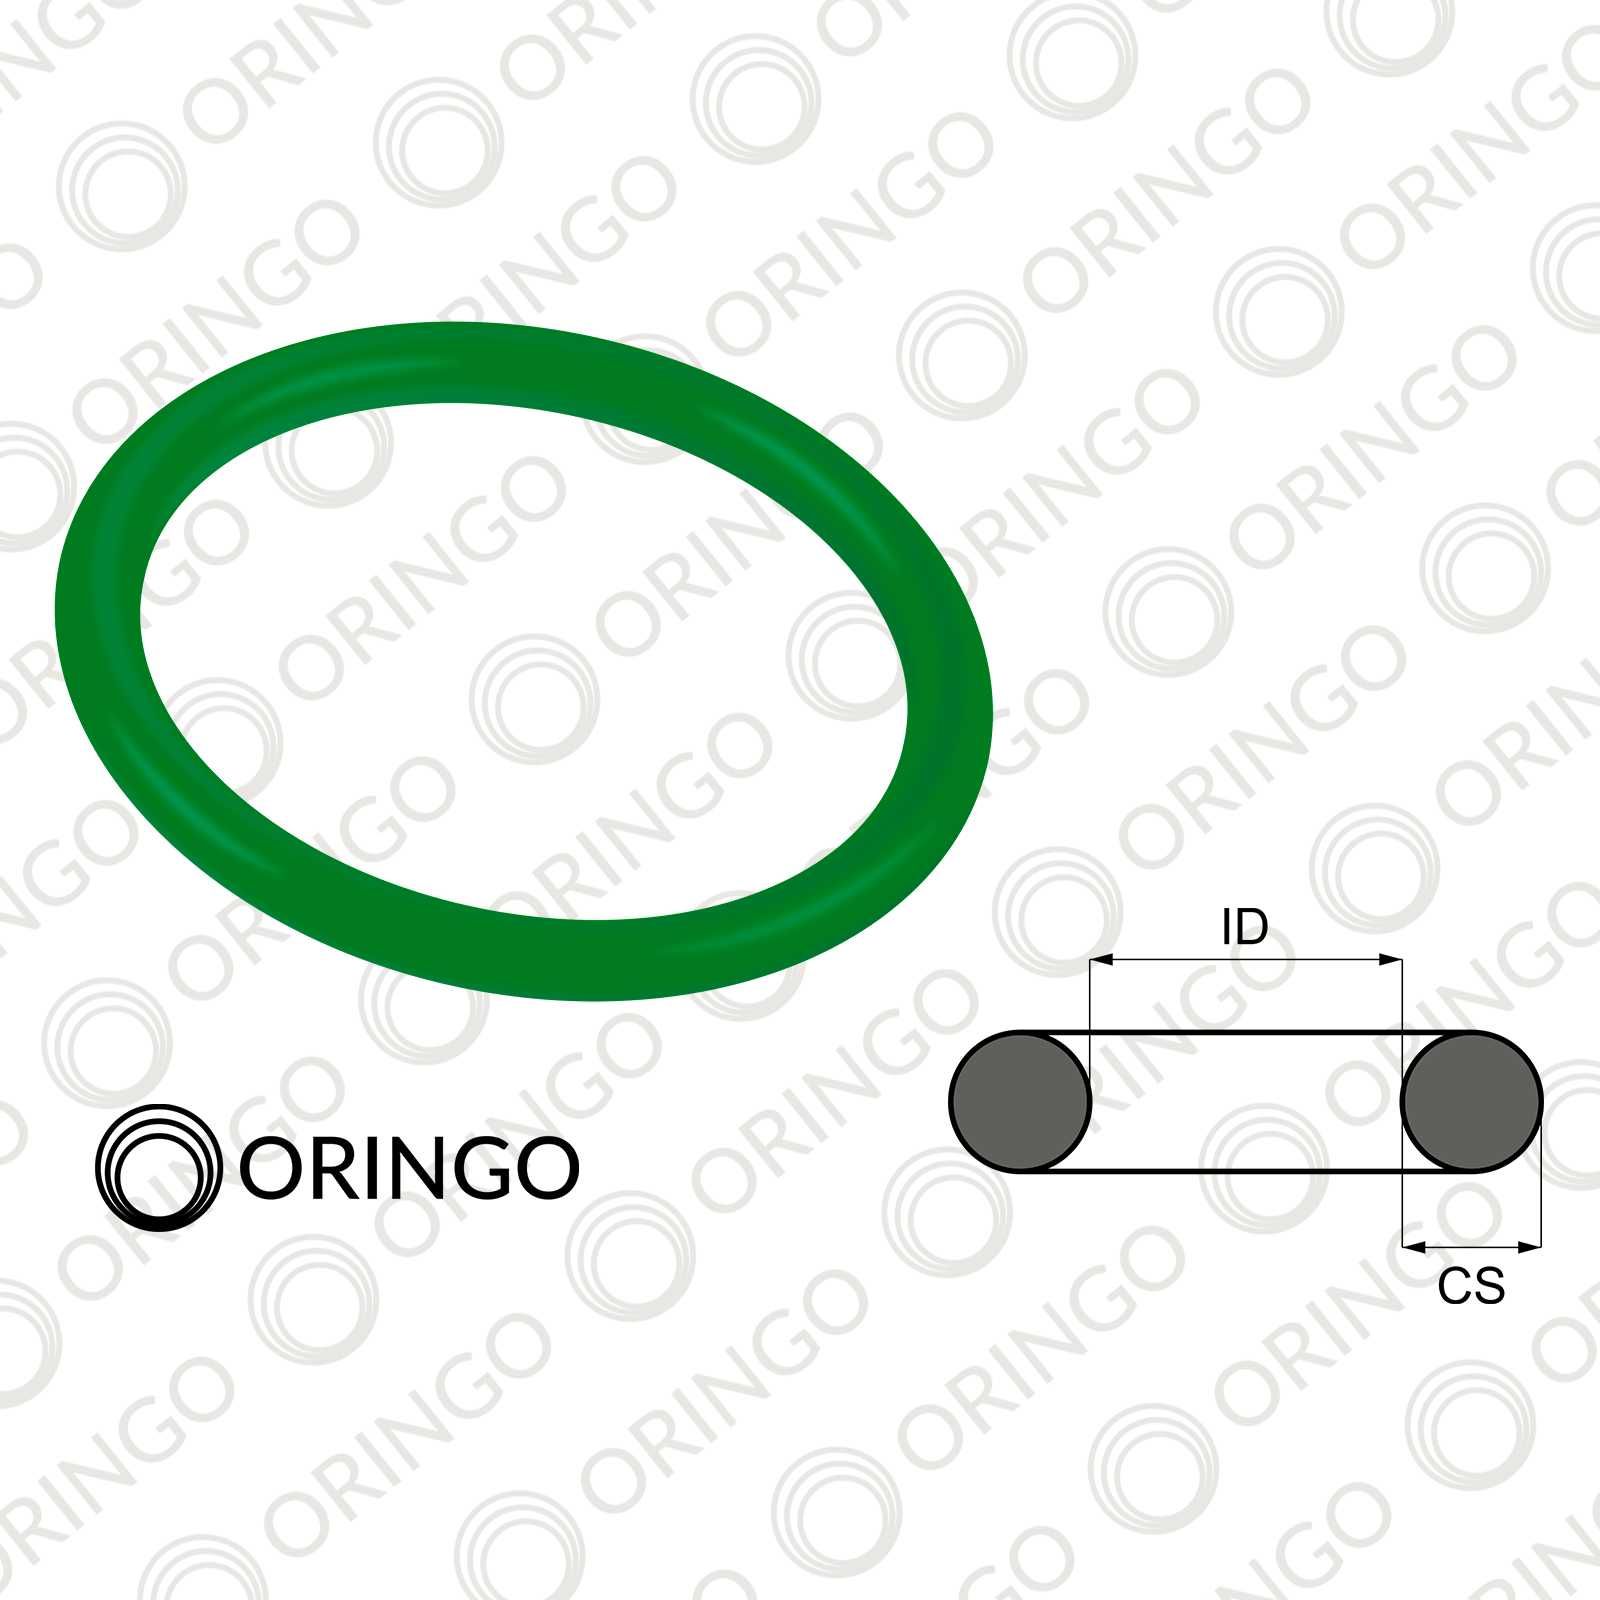 Garnituri inelare - O-ring/Oring 2.5 mm / CS 1.7 mm